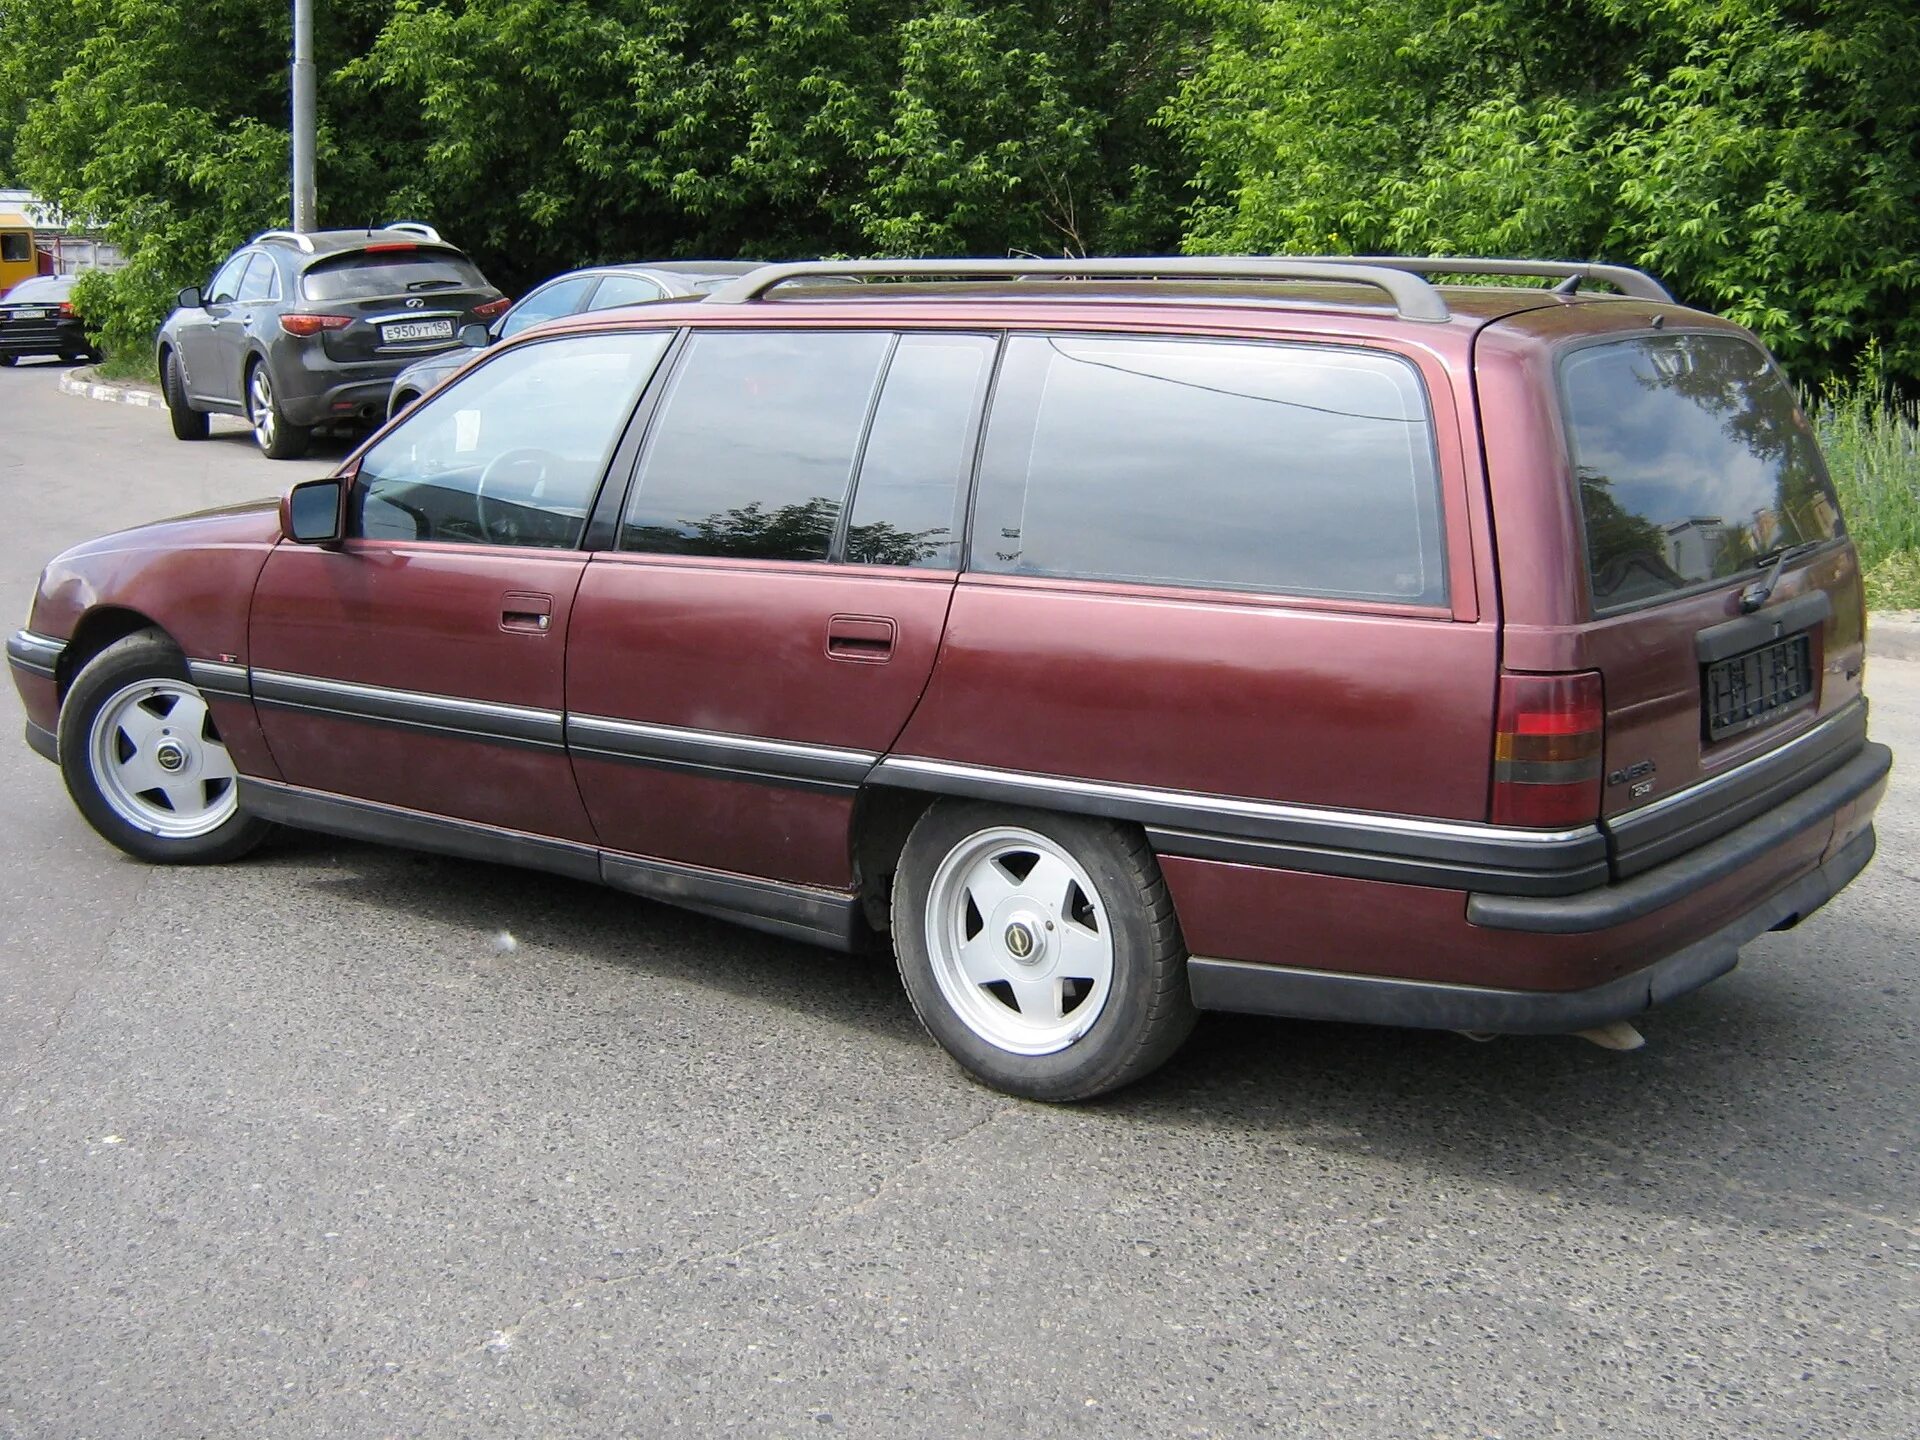 Универсал караван. Opel Omega a Caravan. Opel Omega 1992 универсал. Опель Омега Караван 2 1989. Опель Омега 1986 универсал.